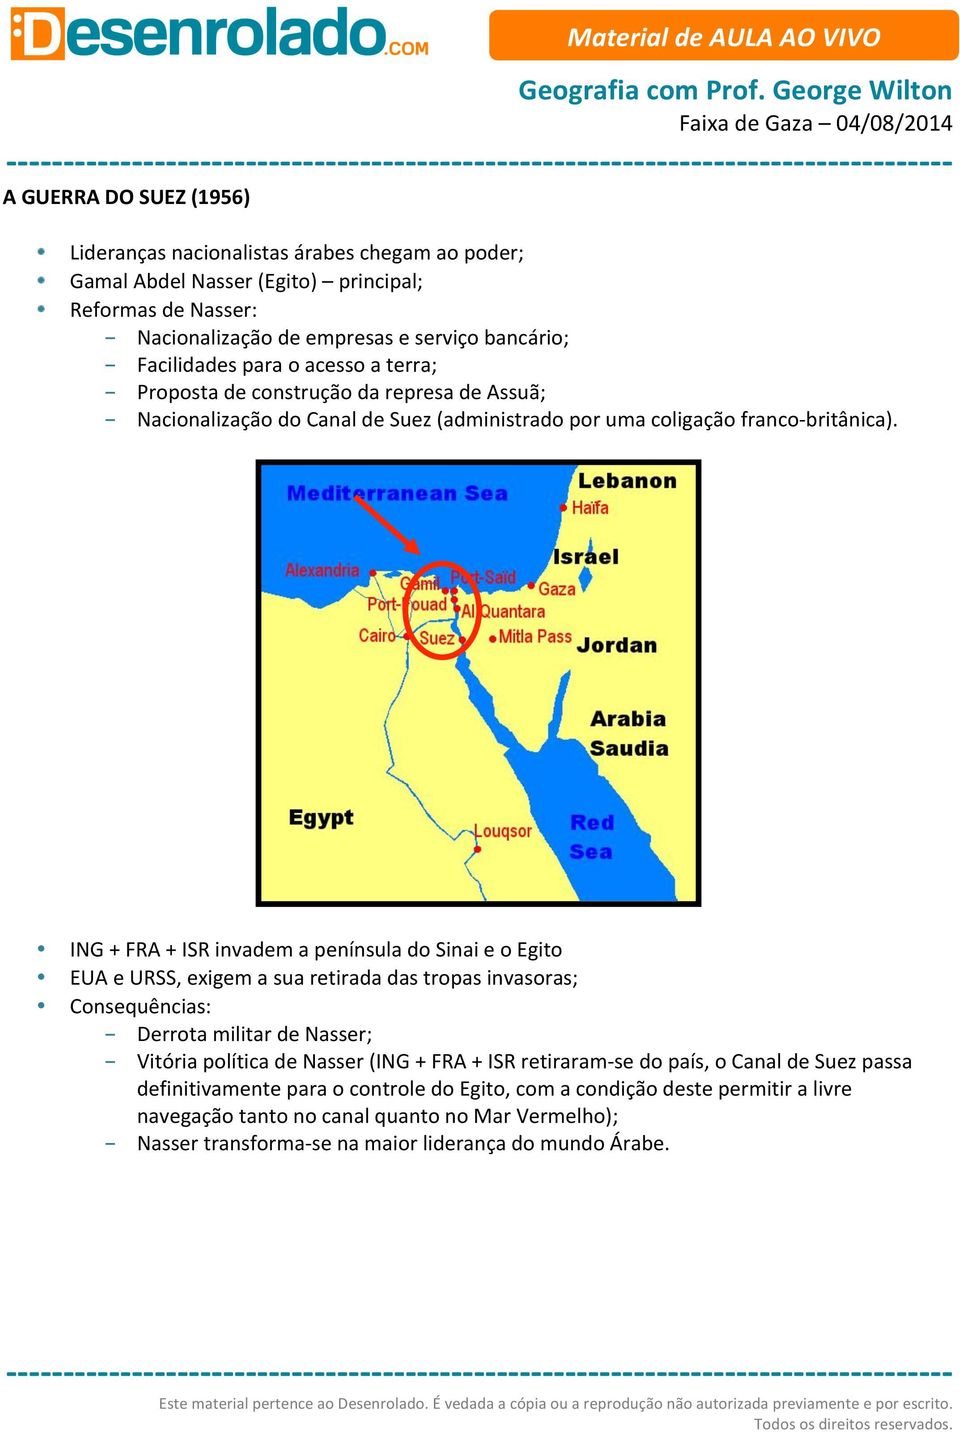 ING + FRA + ISR invadem a península do Sinai e o Egito EUA e URSS, exigem a sua retirada das tropas invasoras; Consequências: - Derrota militar de Nasser; - Vitória política de Nasser (ING + FRA